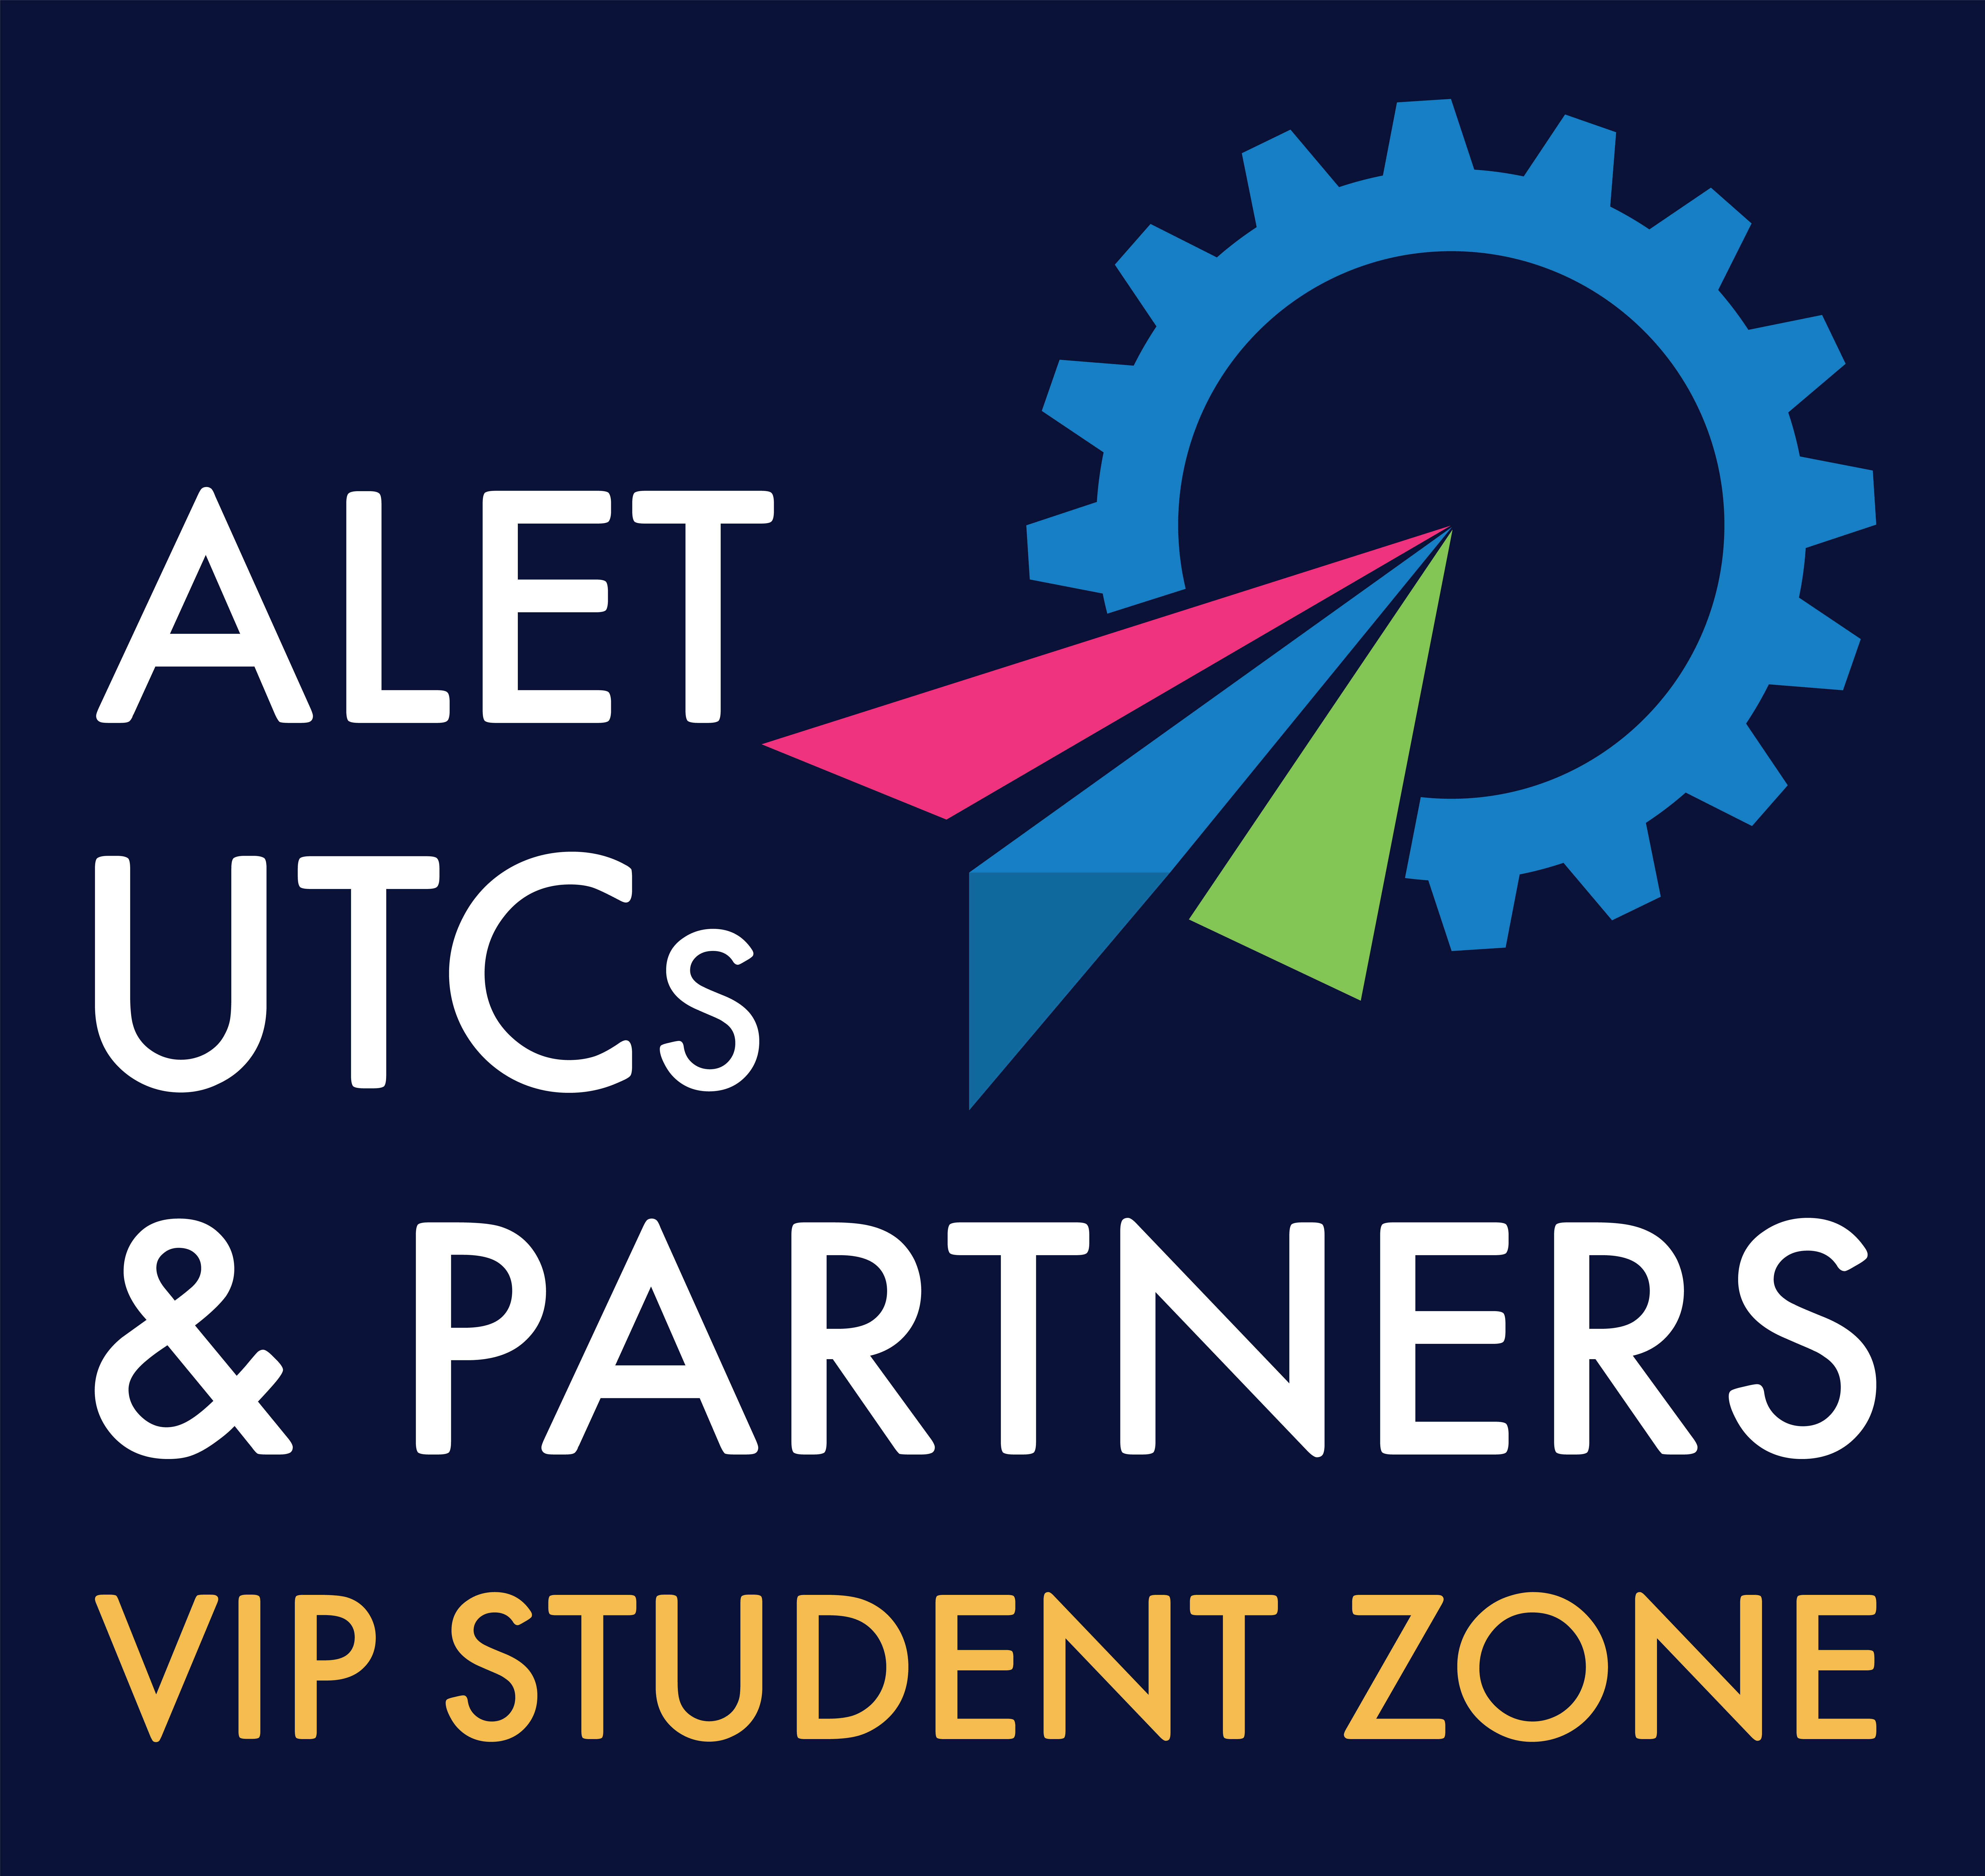 ALET UTCs & Partners – VIP Student Zone